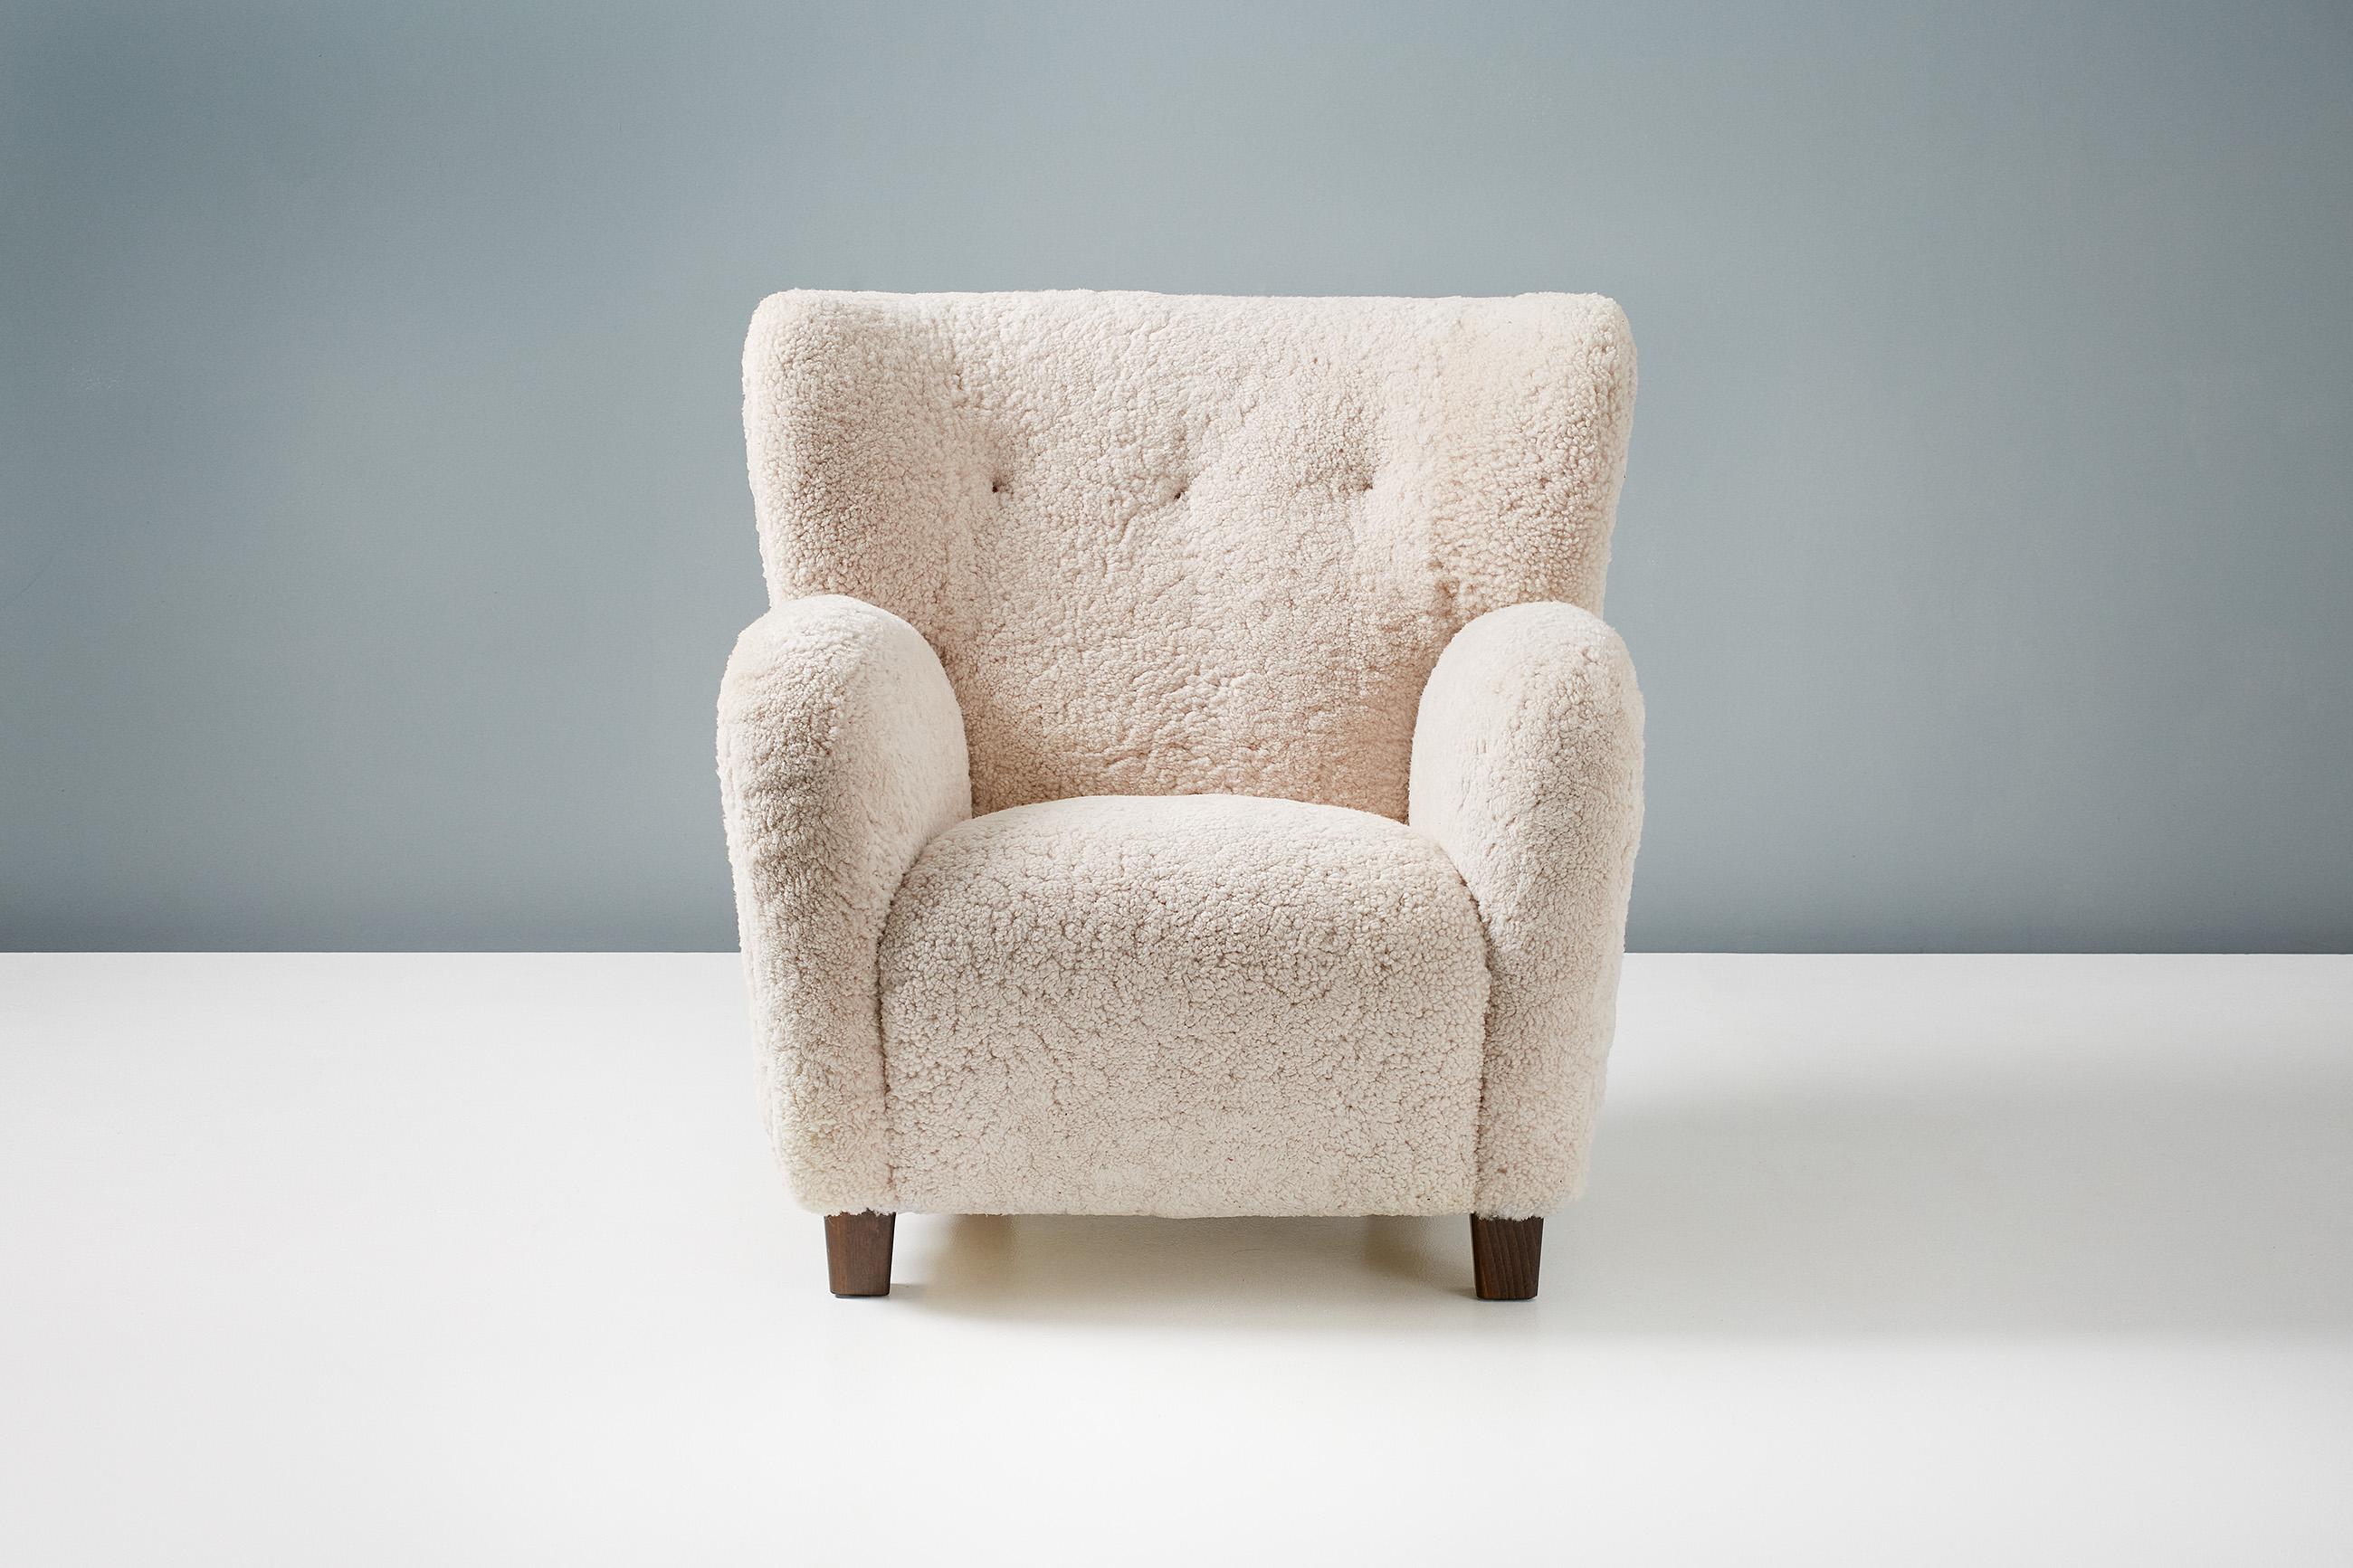 Paire de fauteuils reproduits dans le style moderne danois des années 1940.

Ces pièces haut de gamme et personnalisées sont fabriquées à la main dans nos ateliers en Angleterre. Les pieds de la chaise sont disponibles en chêne huilé, en chêne